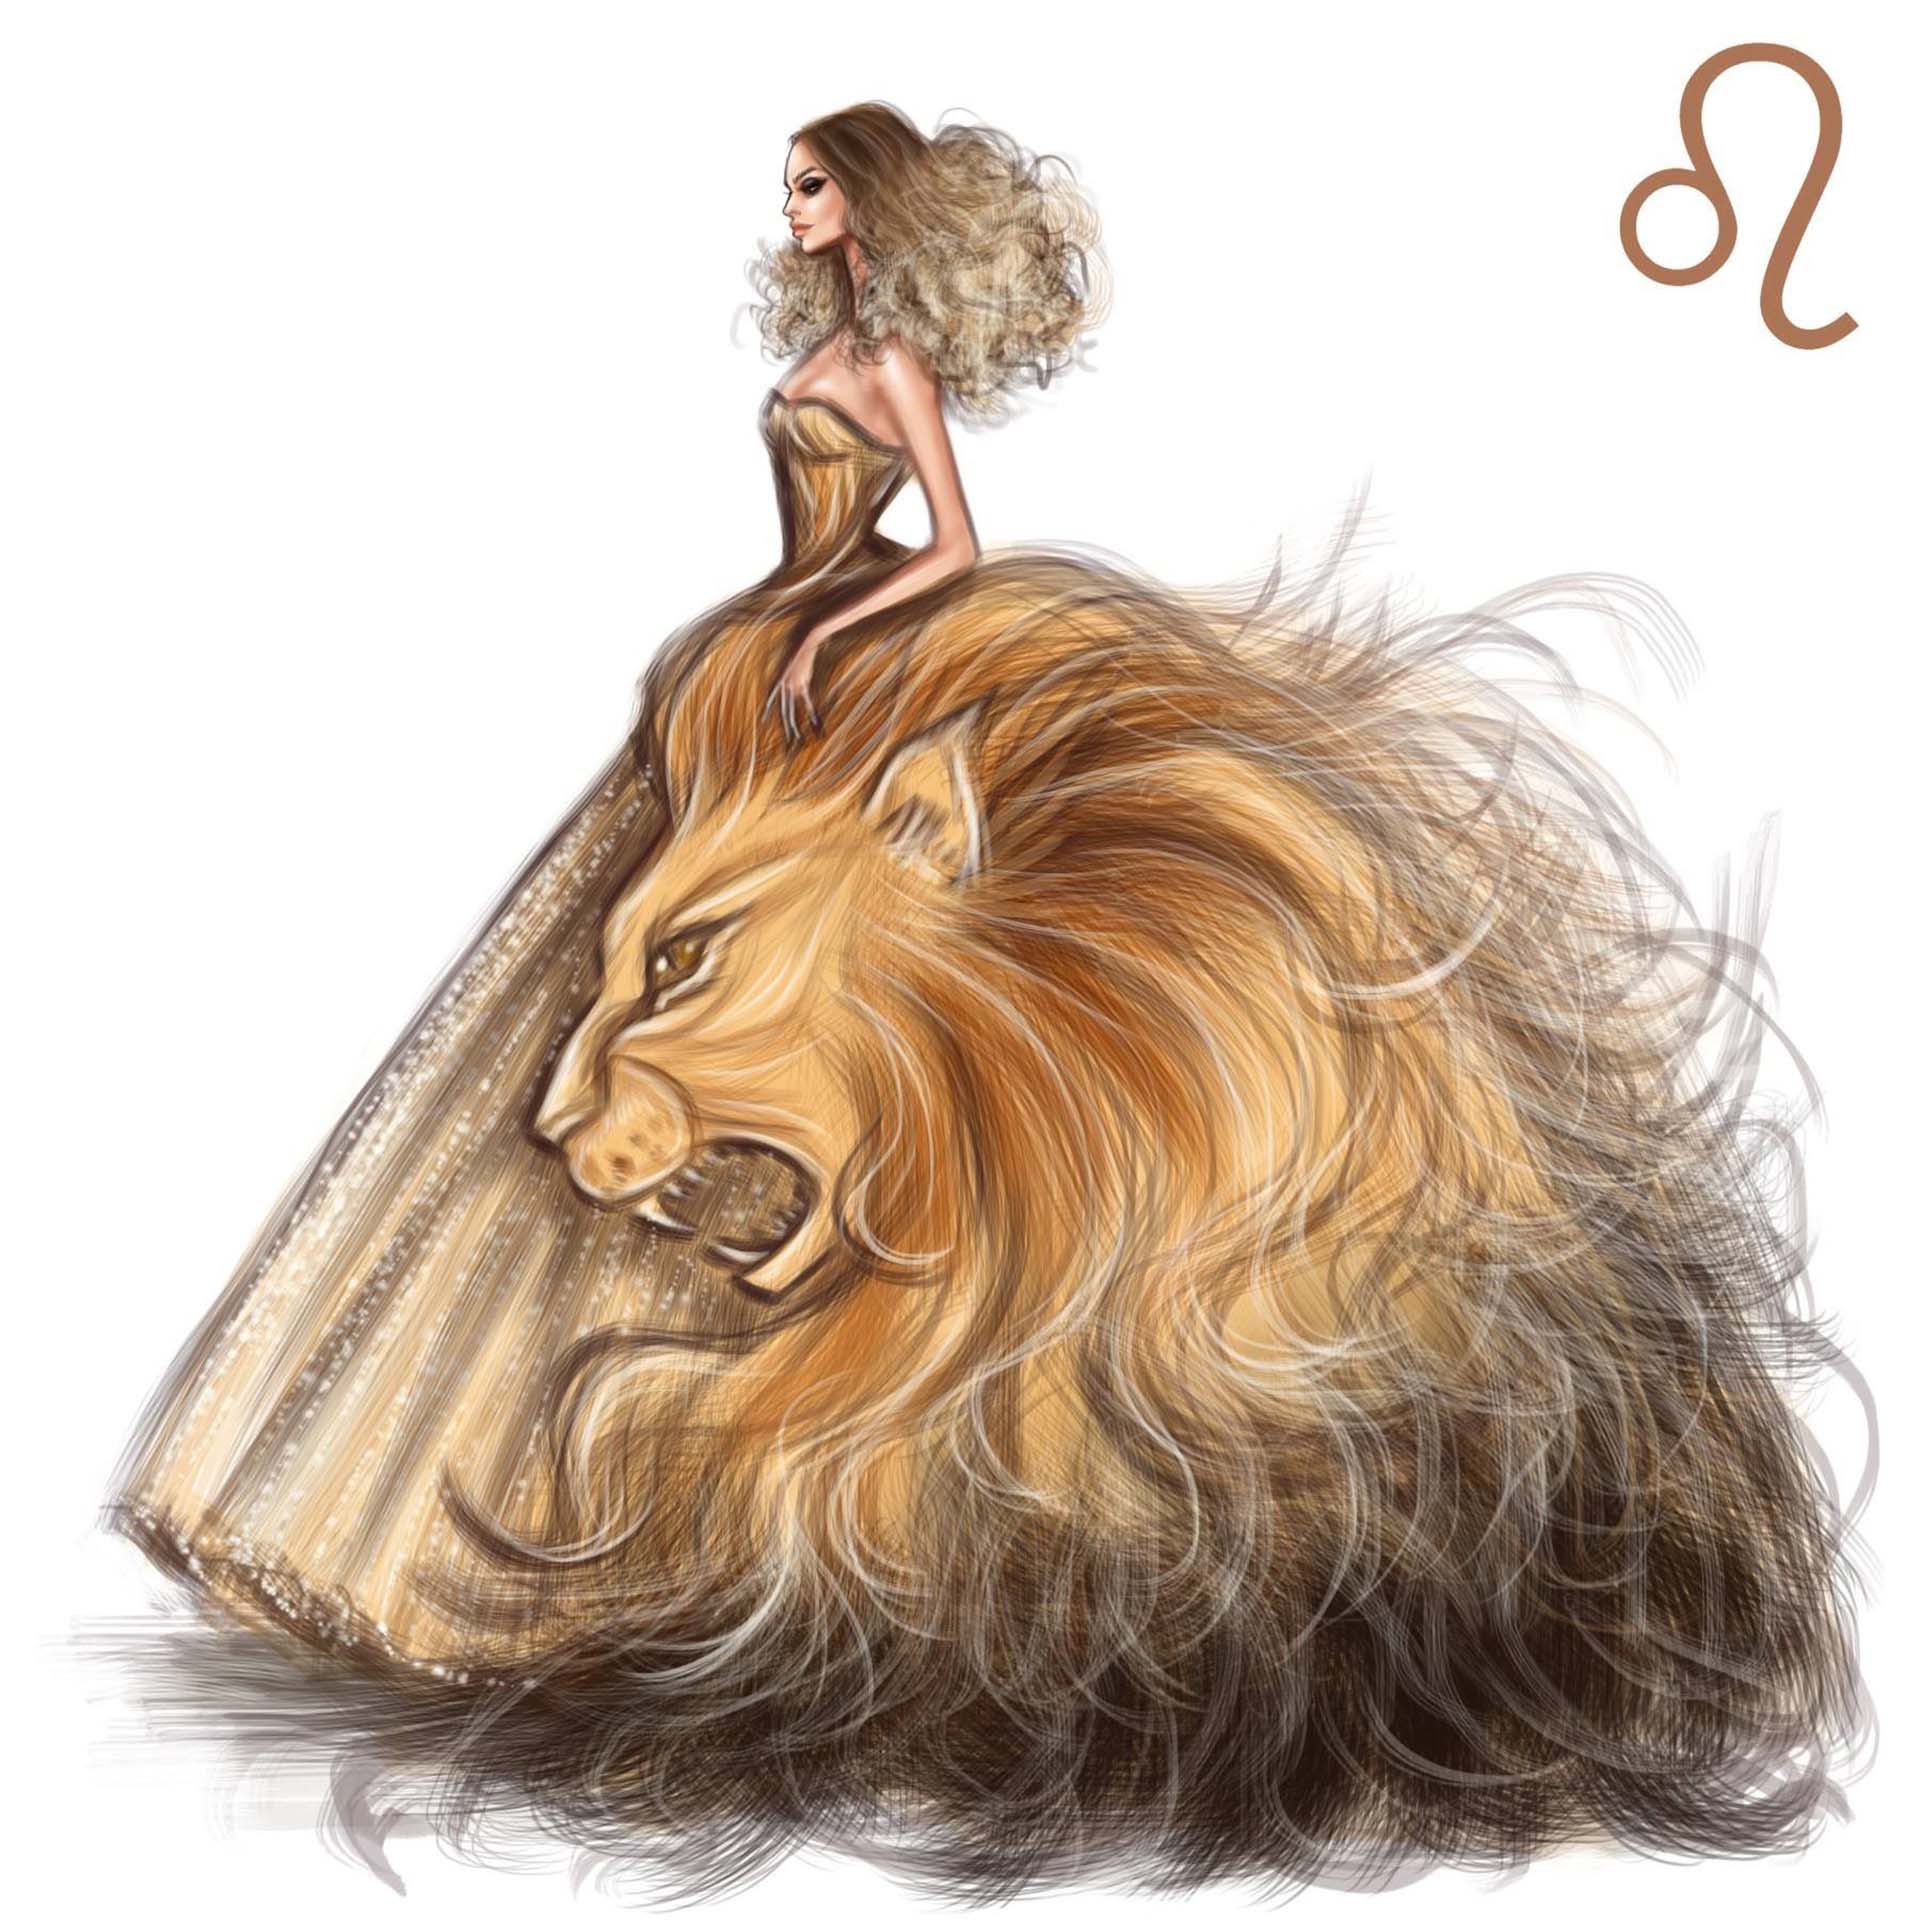 Hướng dẫn cách vẽ cung sư tử đơn giản mà đẹp Wikipedia